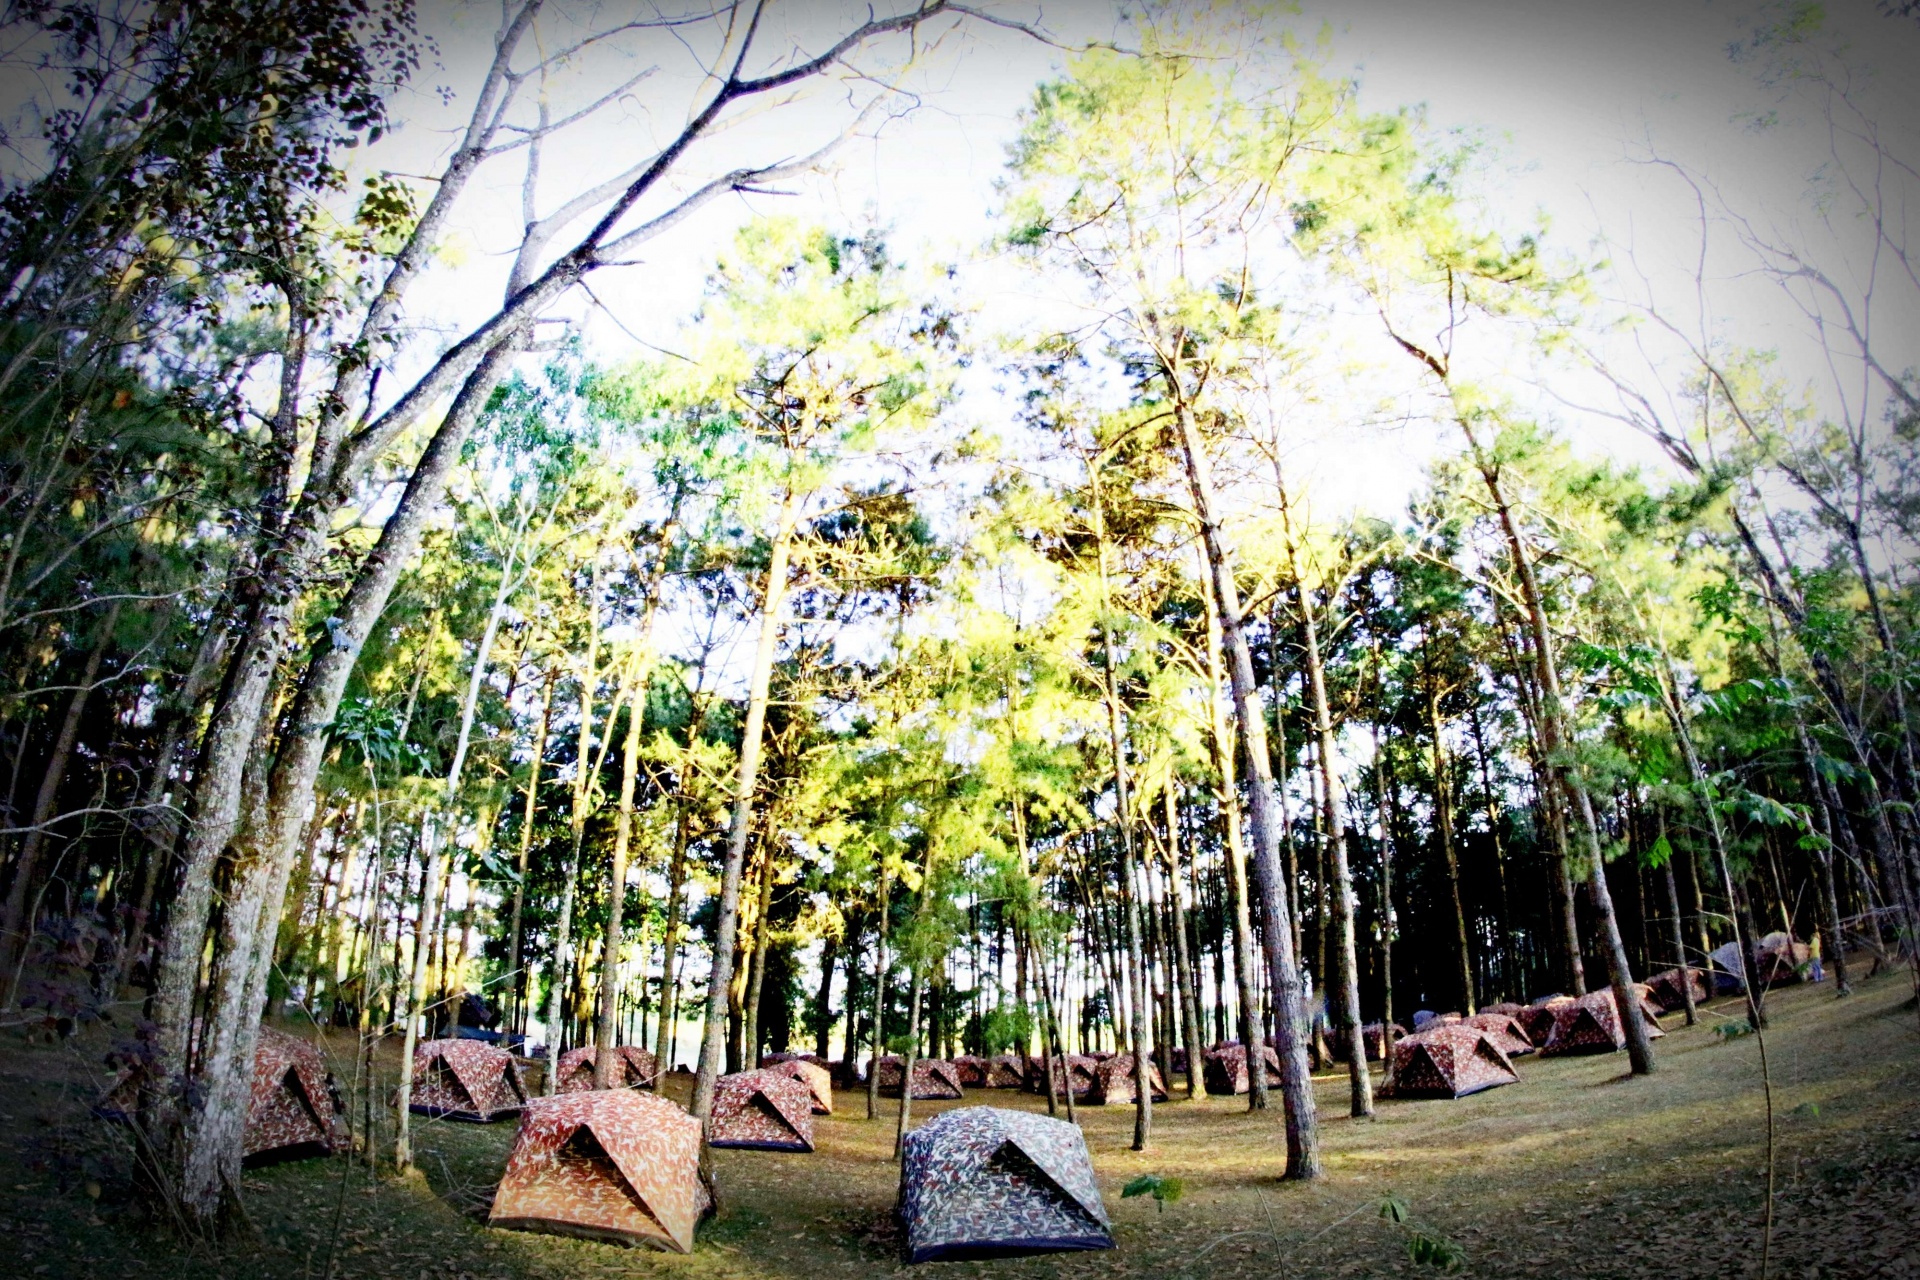 camping in pine Forrest at Phu Hin Rong Kla National Park,Phitsanulok Thailand